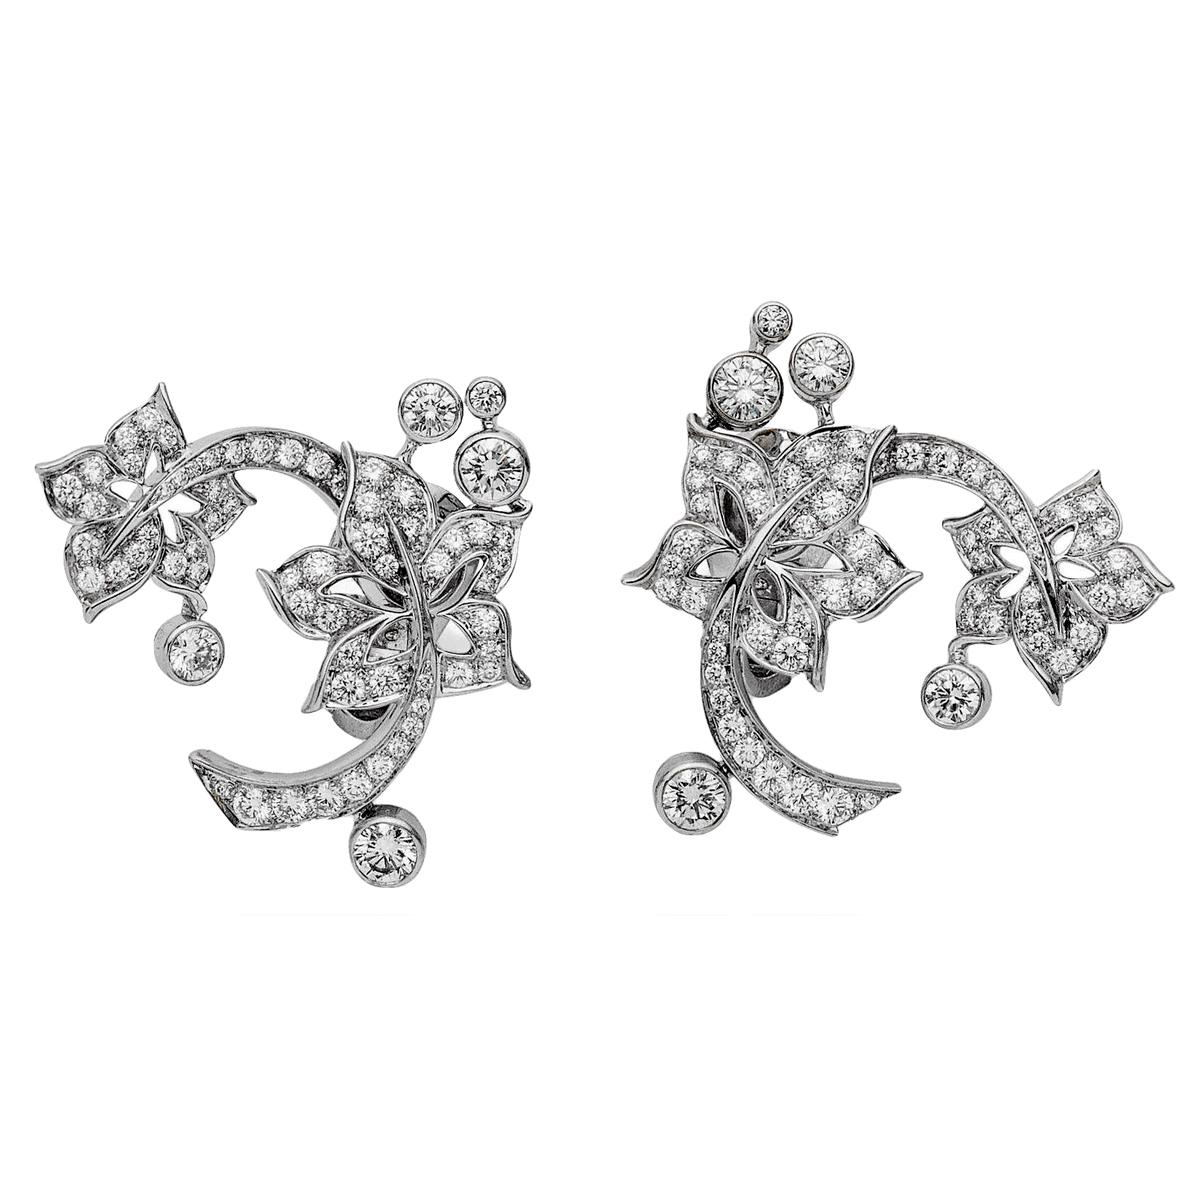 Ein unglaubliches Set von Van Cleef & Arpels Diamant-Ohrringen aus Weißgold. Die Ohrringe zeigen ein florales Motiv aus 18 Karat Weißgold und sind mit 2,35 Karat feinster runder Diamanten im Brillantschliff besetzt.